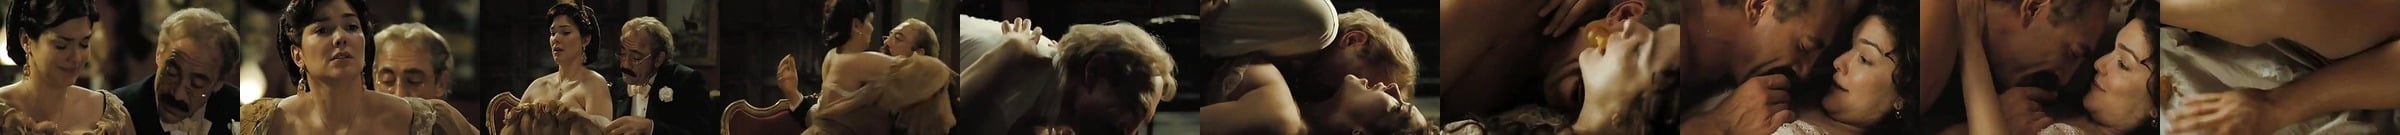 Martina Gedeck In Bra Tits Grabbed Panties Stuffed In Xhamster